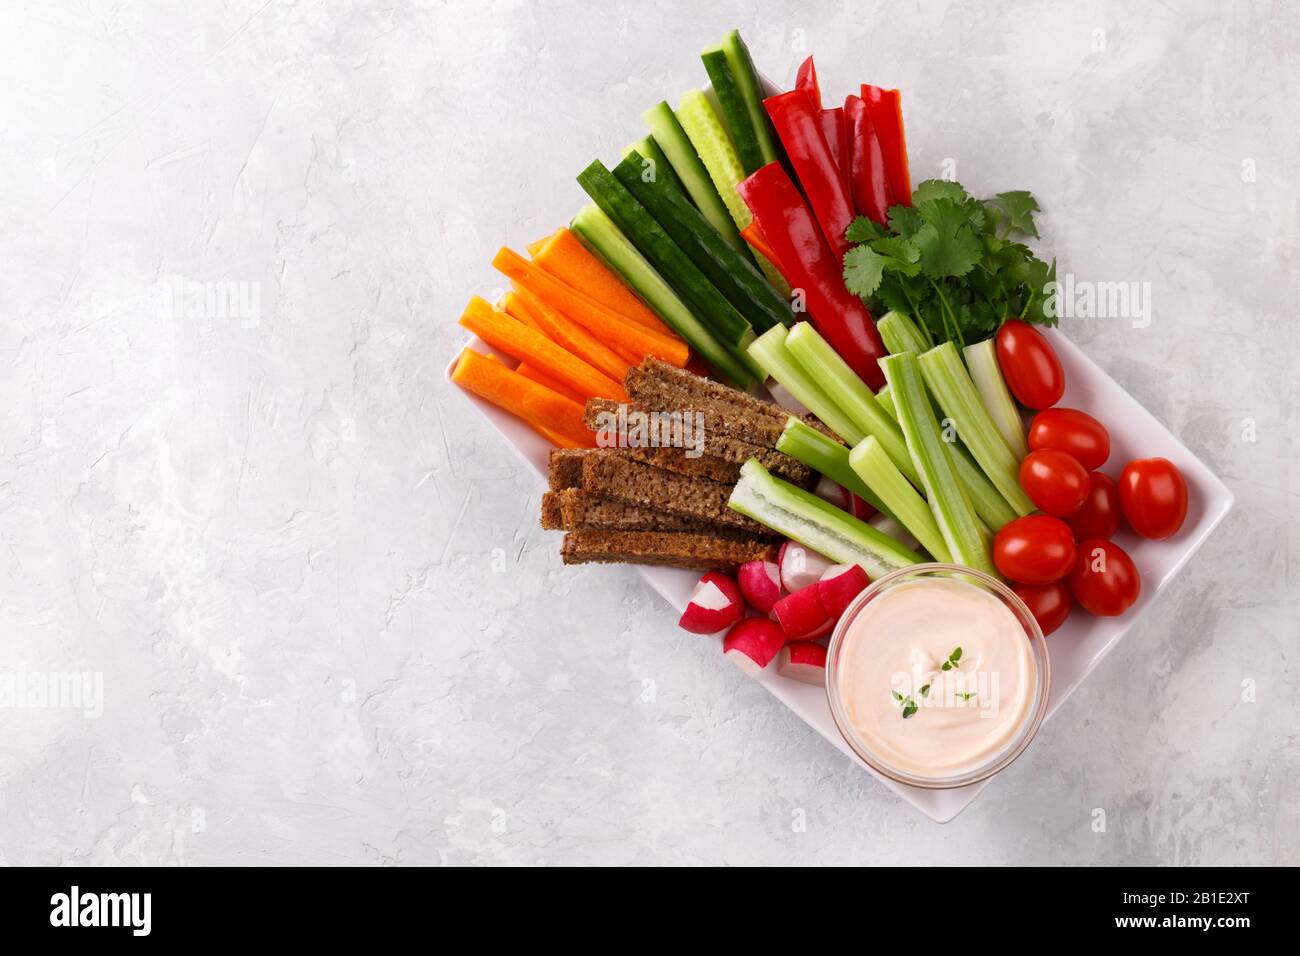 En-cas de légumes sains avec sauce au yaourt sur fond de pierre grise, vue de dessus rapprochée, espace de copie Banque D'Images